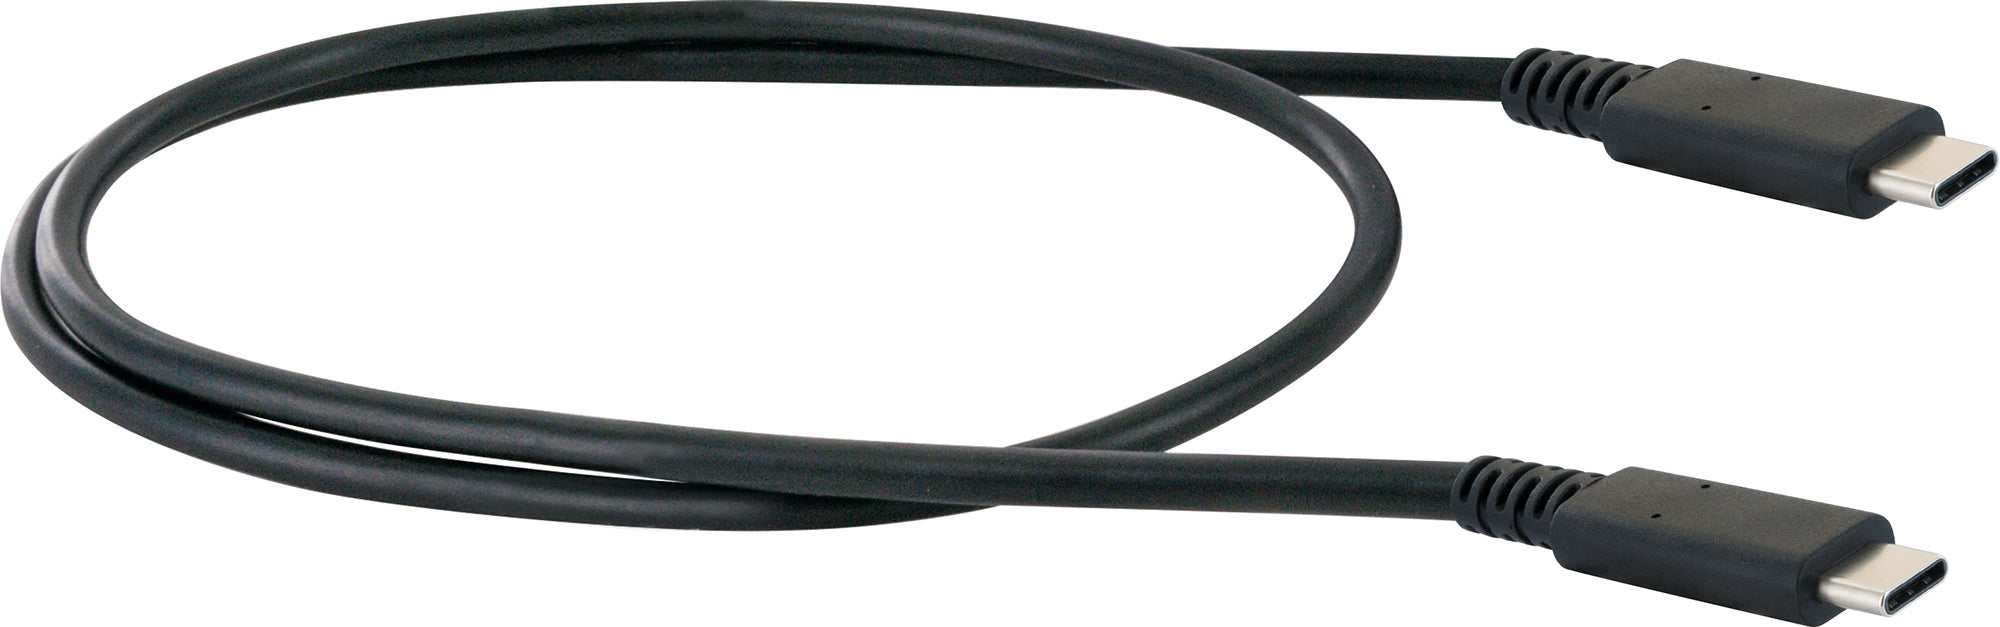 USB Type-C Ladekabel